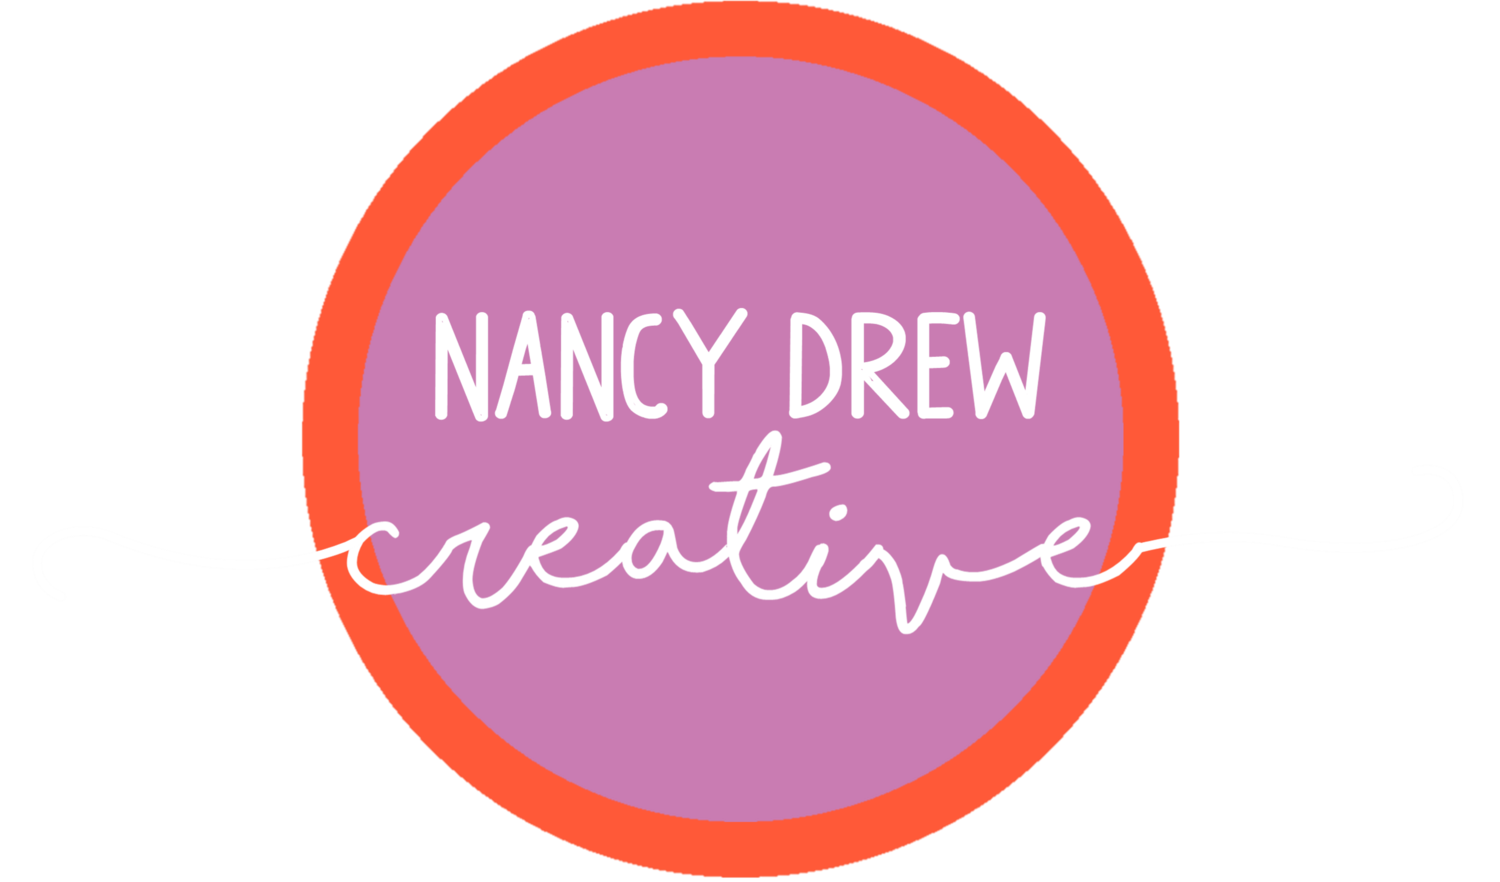 Nancy Drew Creative